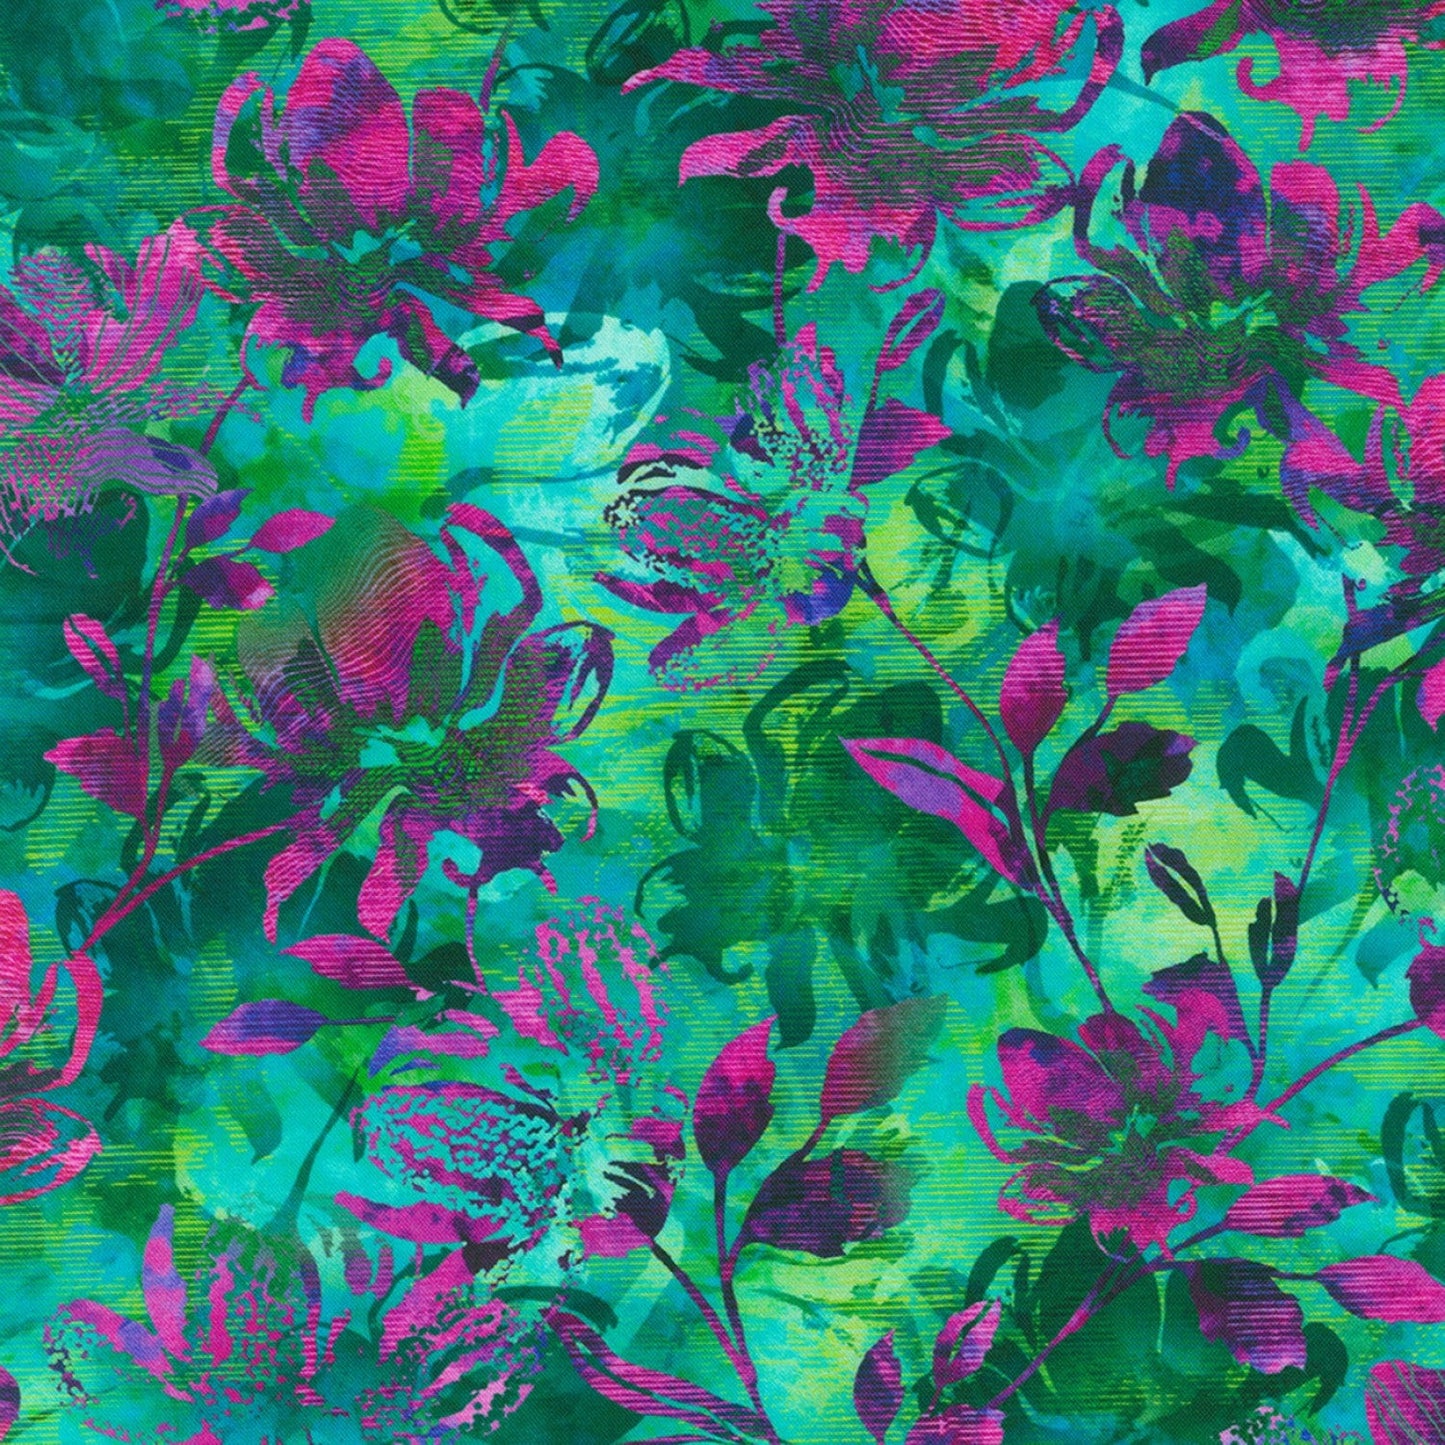 Wild Vista 20 Piece Fat Quarter Bundle, Robert Kaufman FQ-2059-20, Purple Green Floral Fabric, 18 x 22 Fabric Cuts